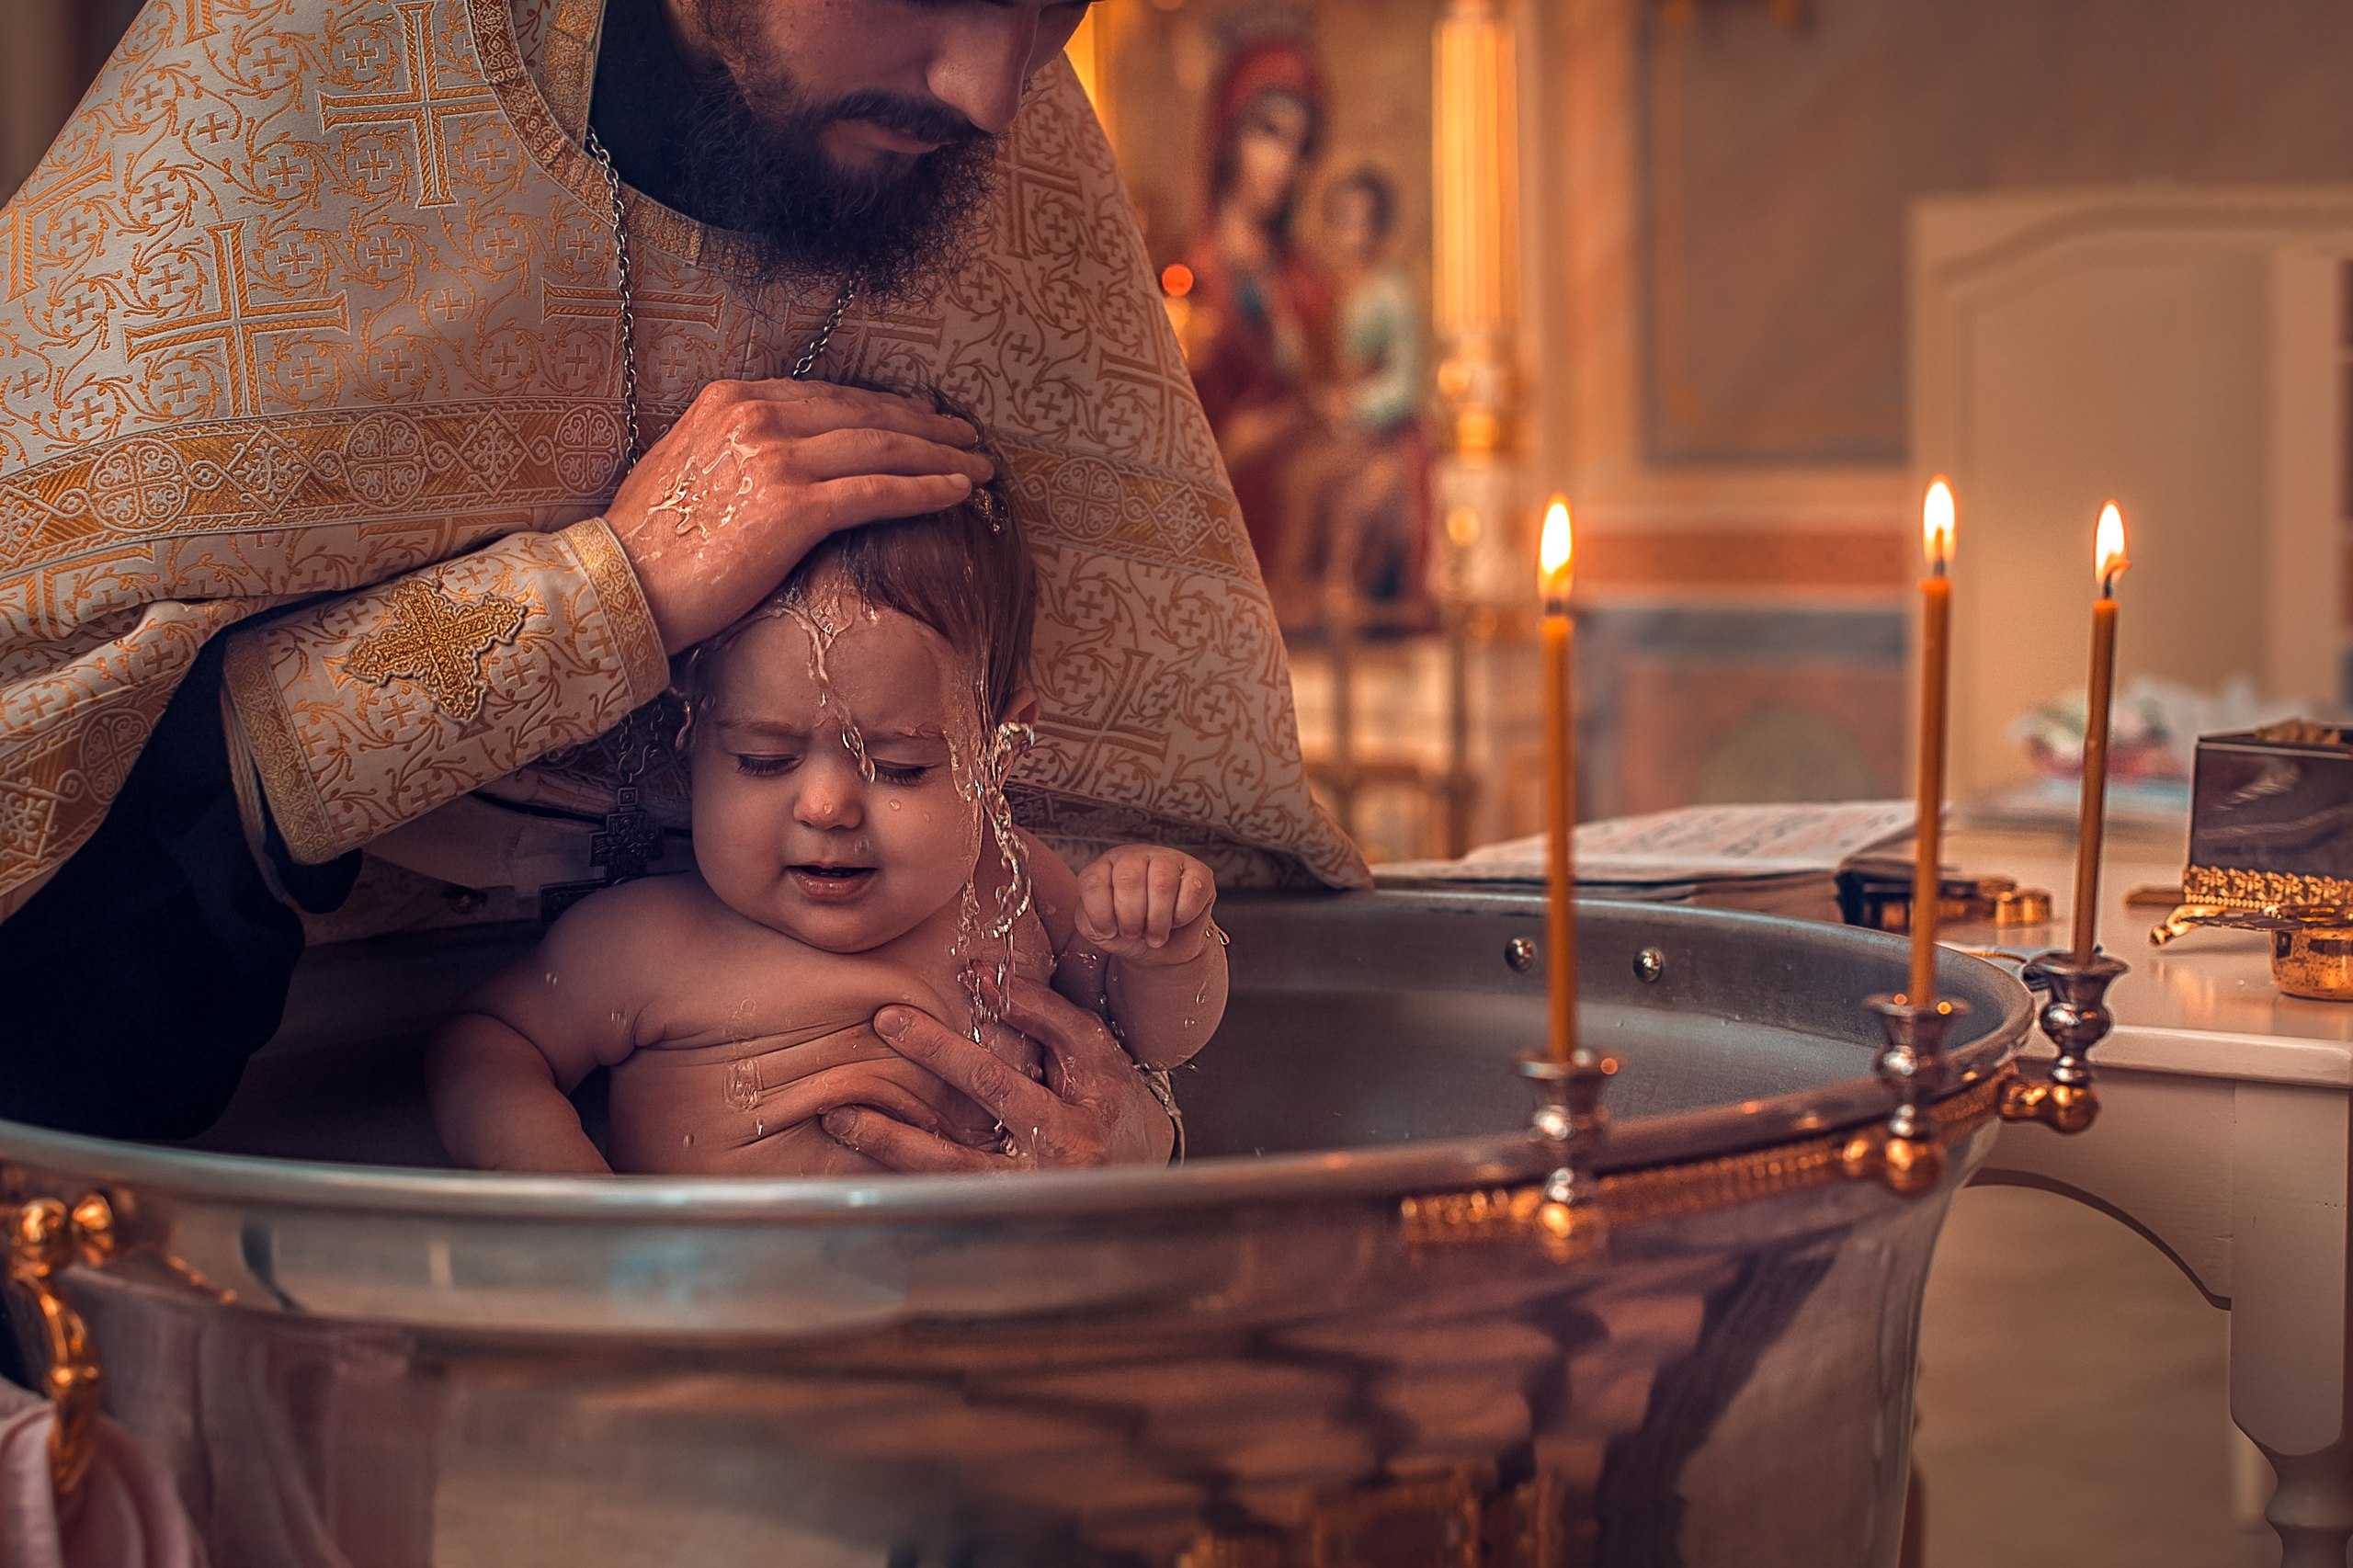 Обязанности крестного. что должны делать крестный отец и крестная мать?